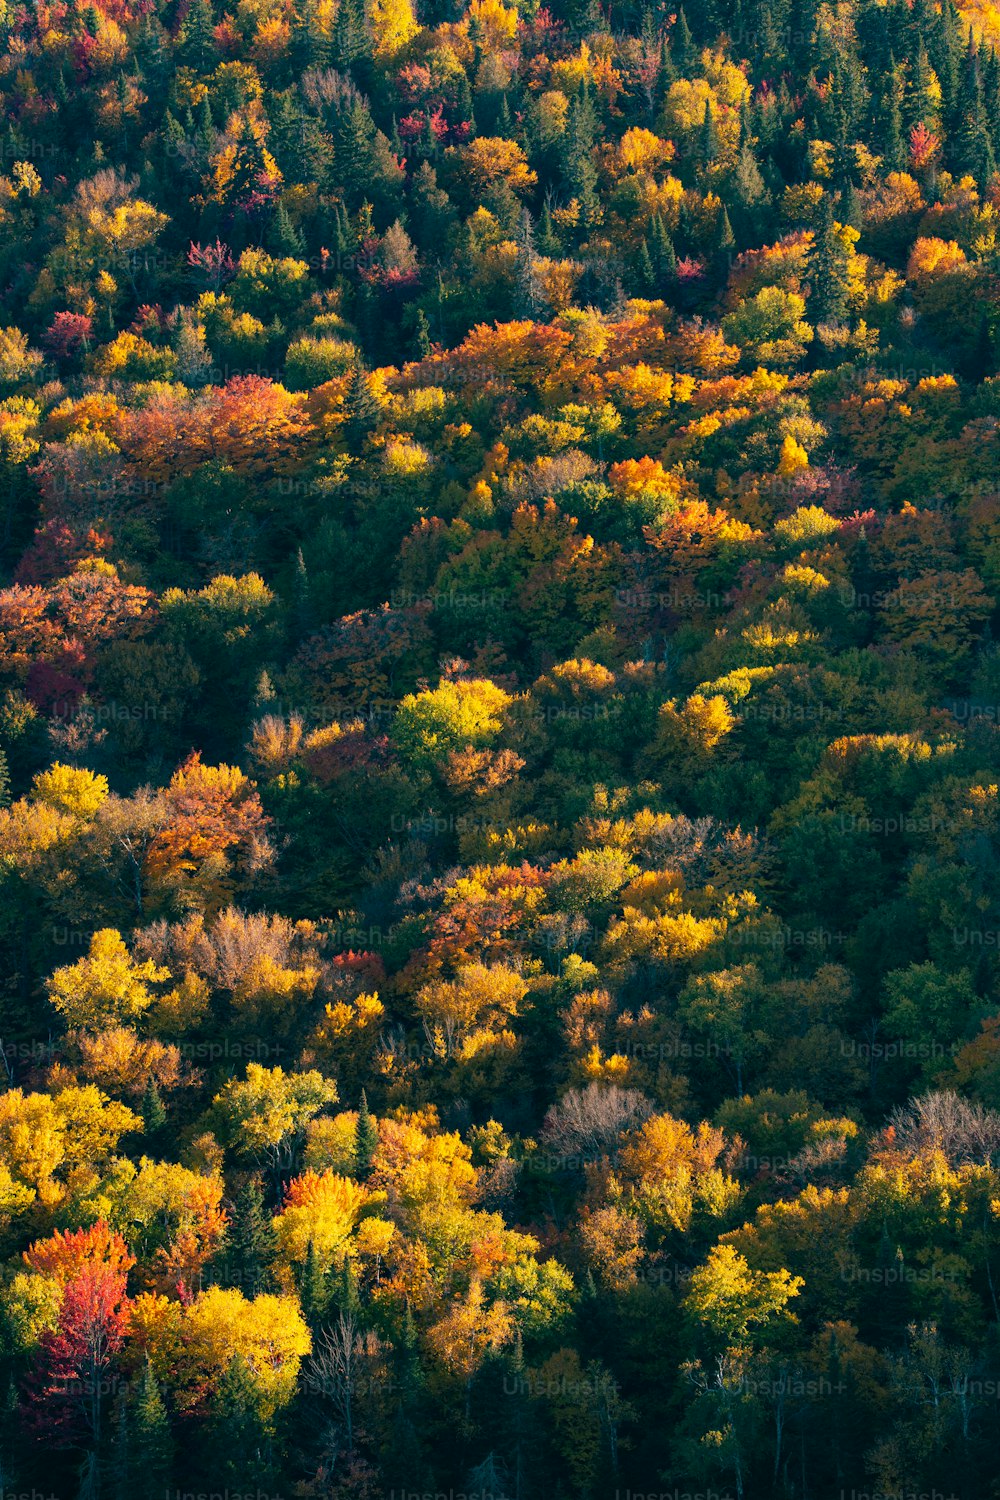 Ein Wald mit vielen Bäumen, die in Herbstfarben gehüllt sind